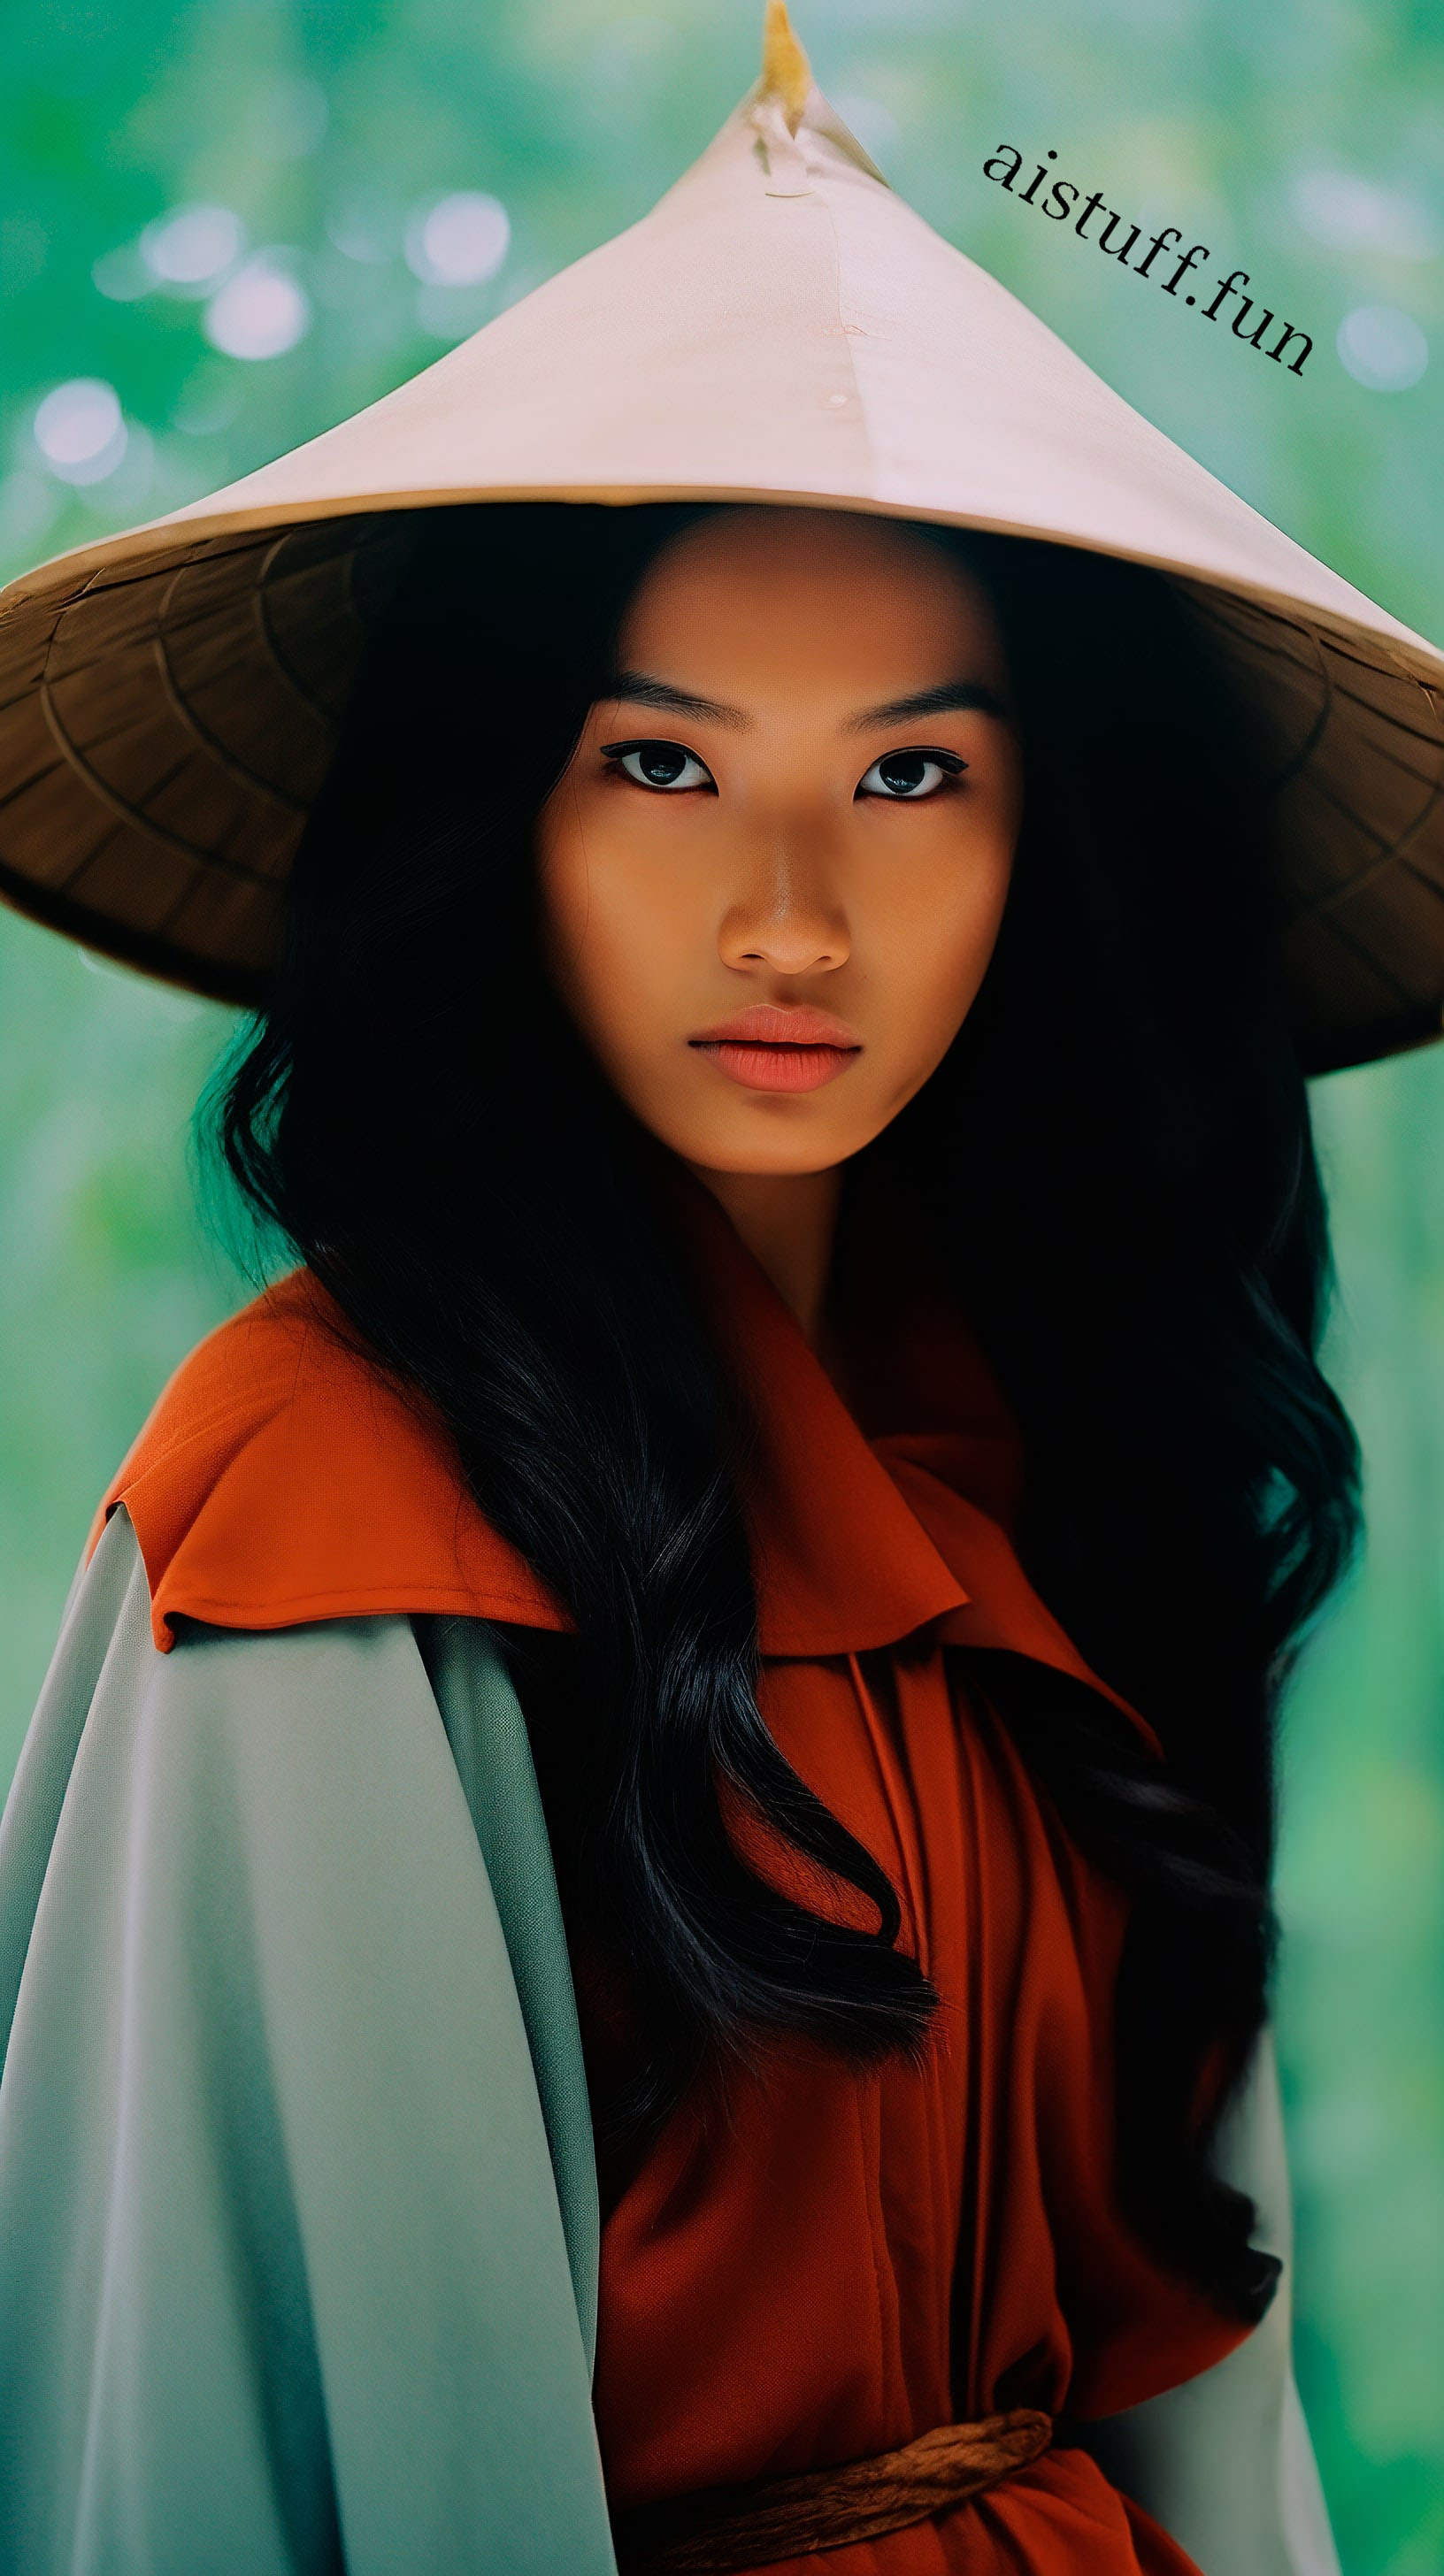 Вьетнамская девушка в азиатской шляпе и красном наряде